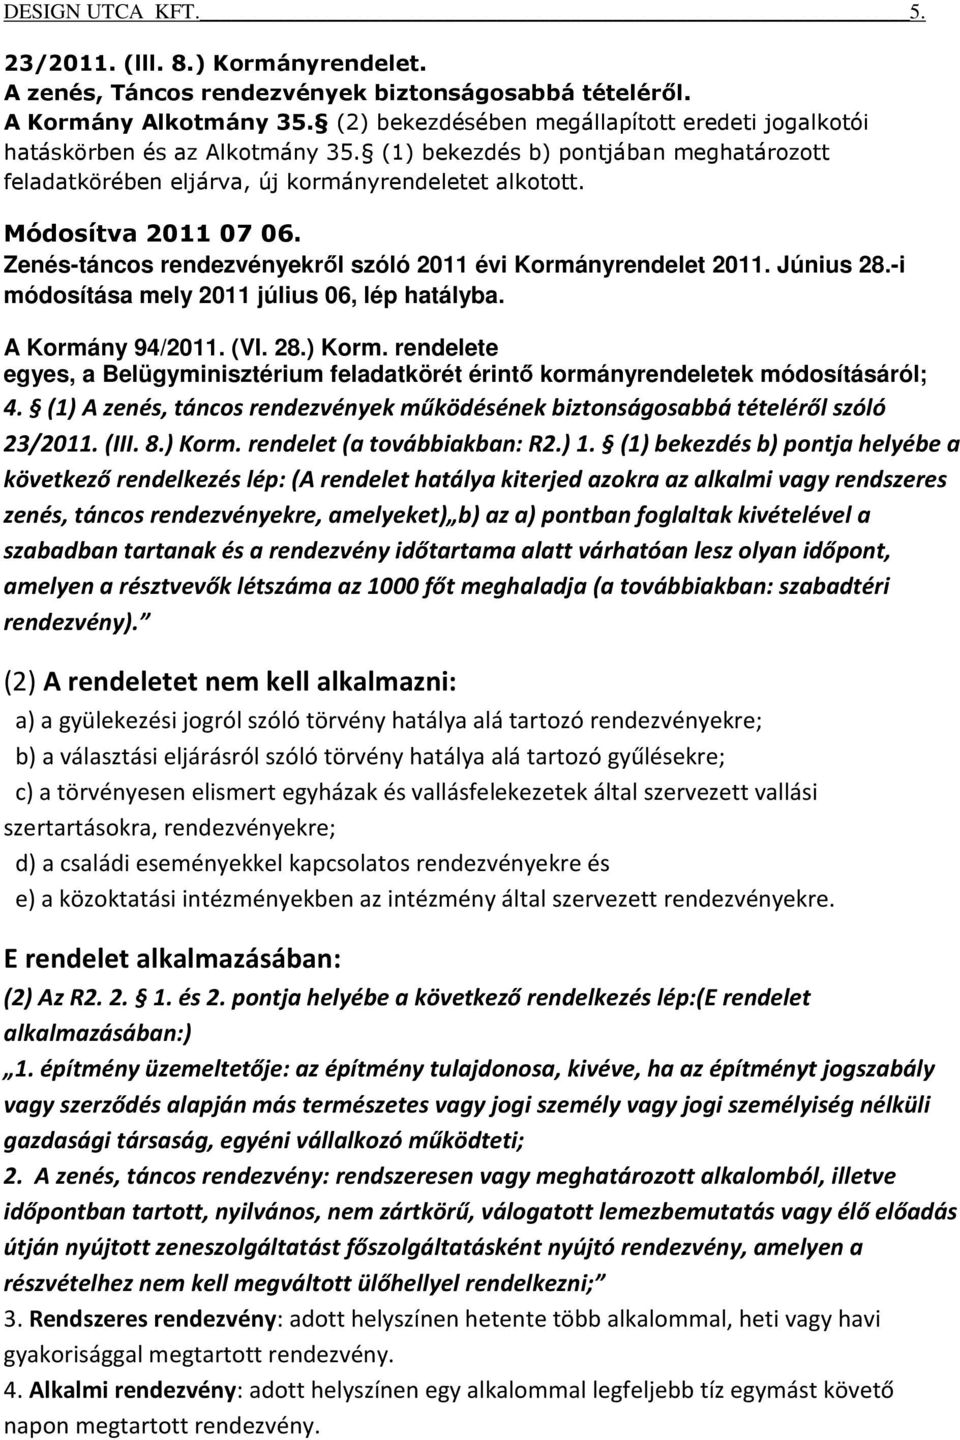 Zenés-táncos rendezvényekről szóló 2011 évi Kormányrendelet 2011. Június 28.-i módosítása mely 2011 július 06, lép hatályba. A Kormány 94/2011. (VI. 28.) Korm.